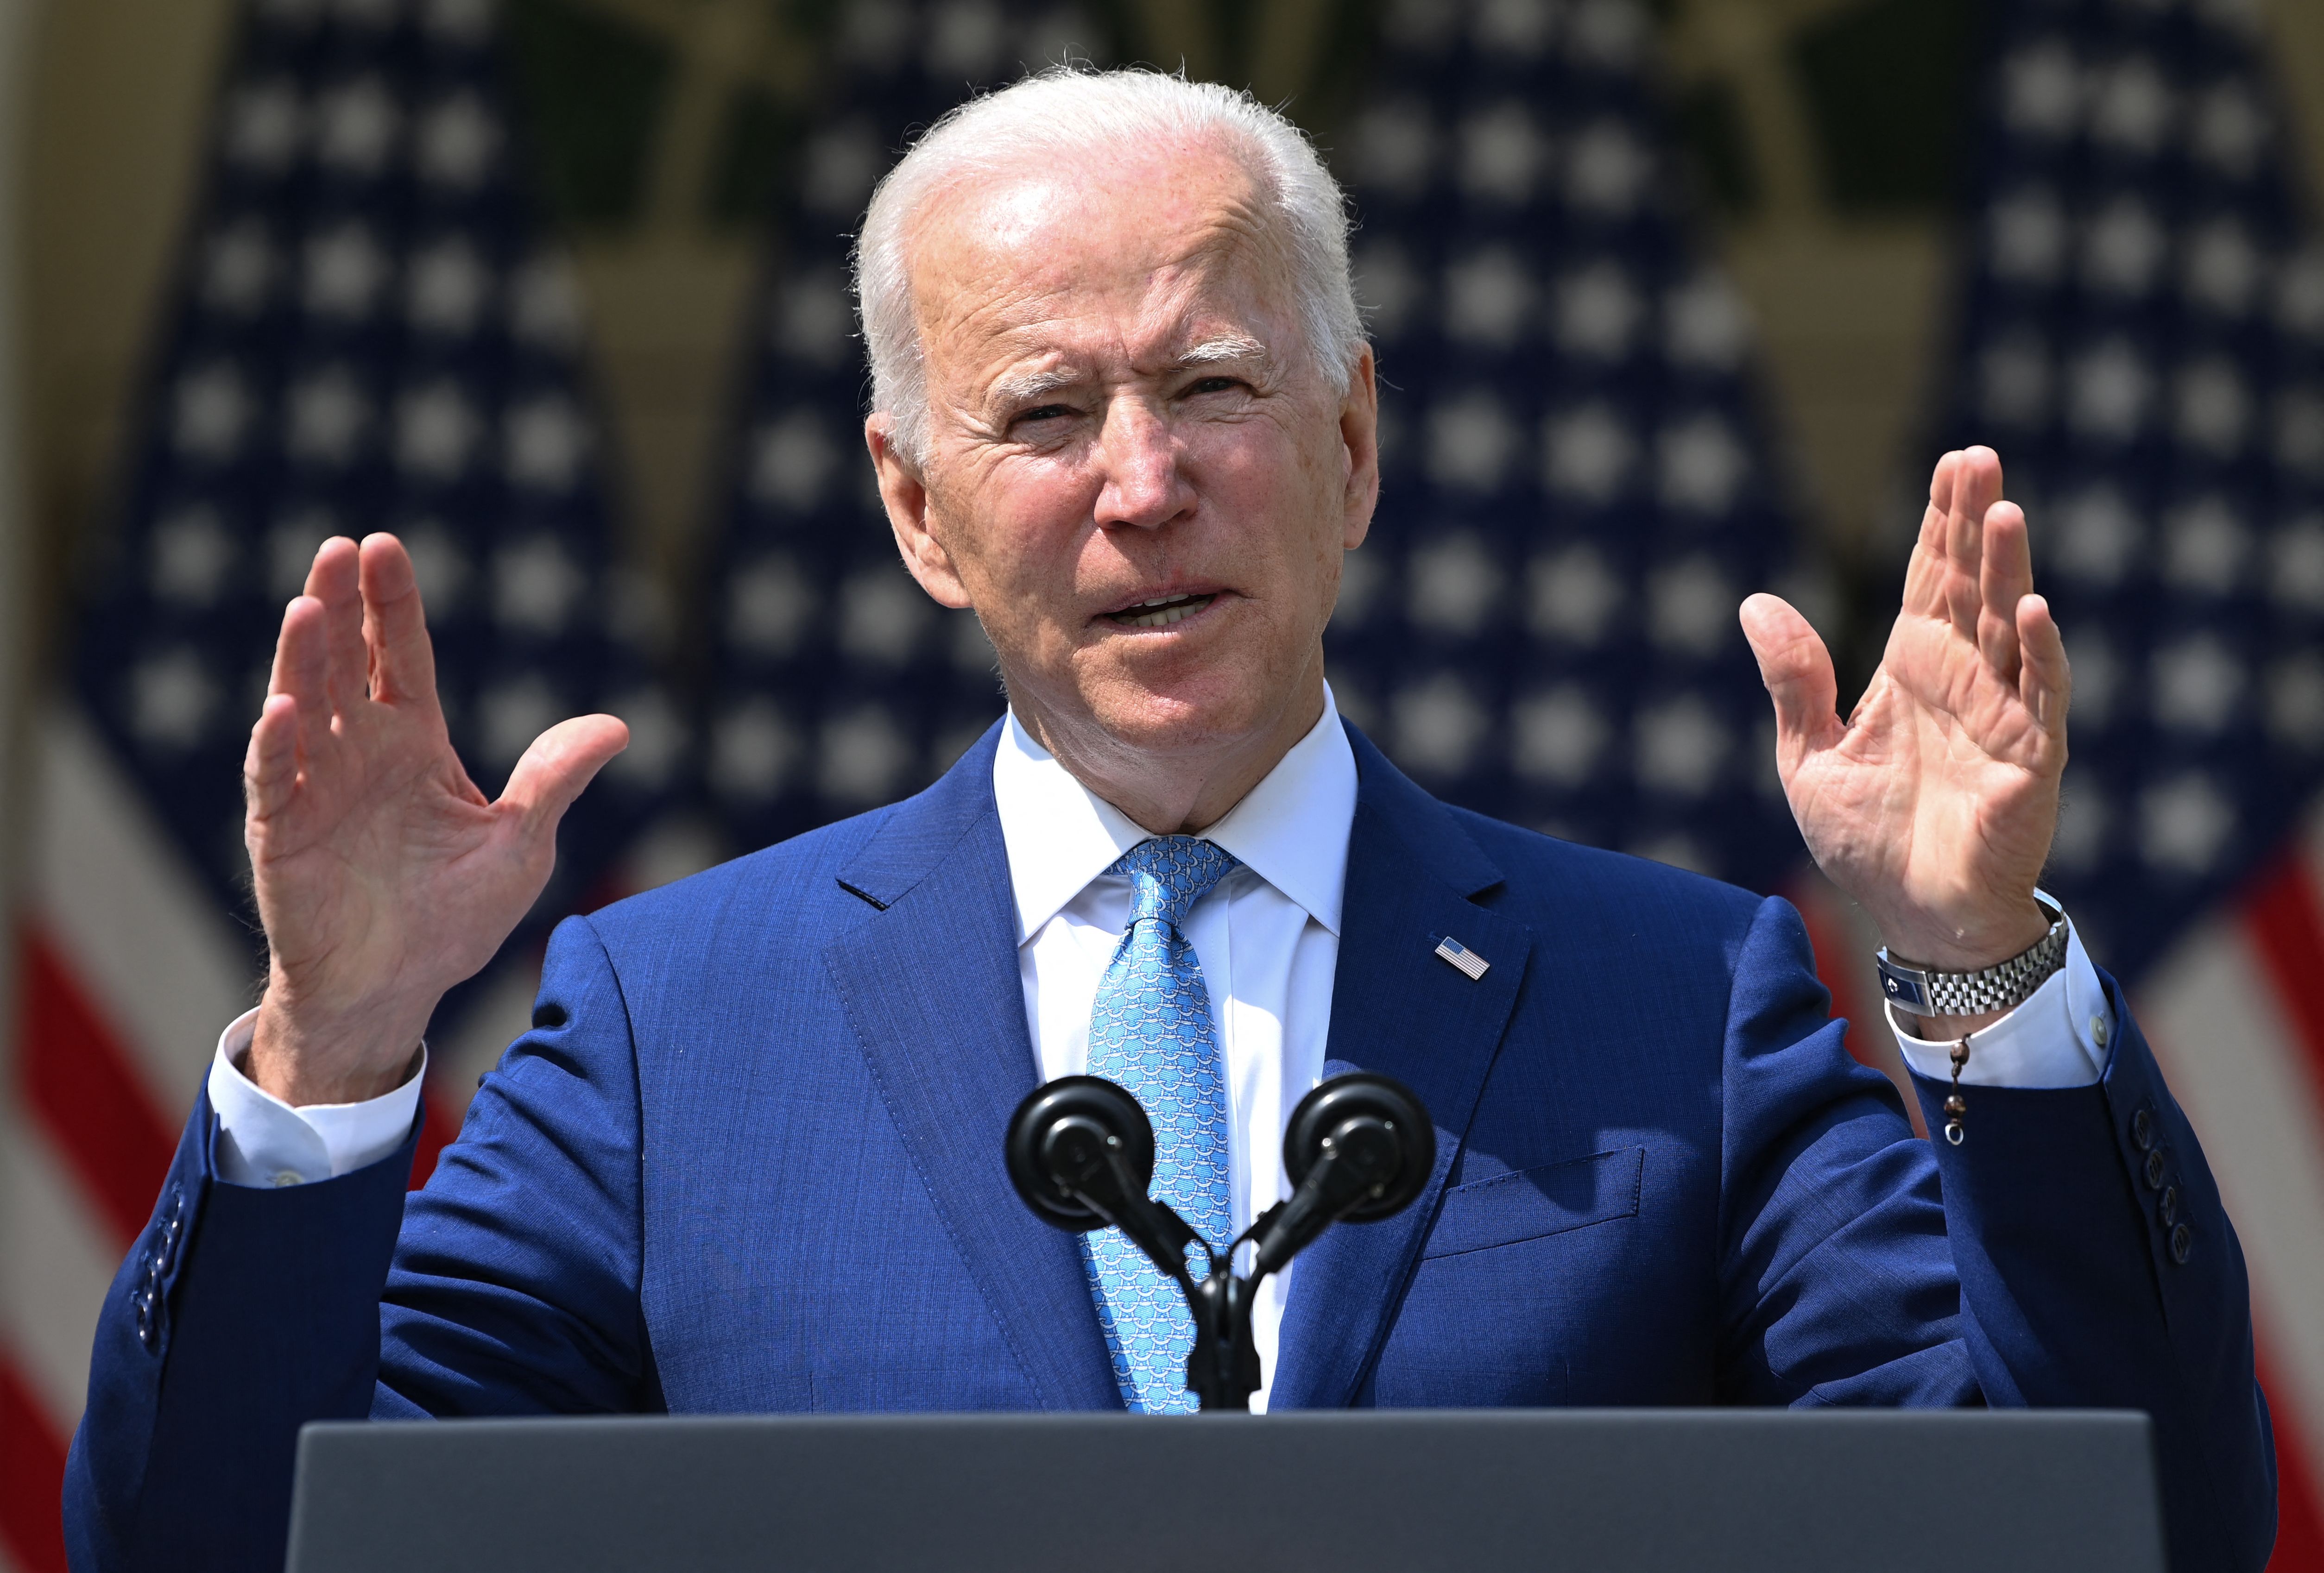 President Joe Biden speaks about gun violence prevention in the Rose Garden of the White House in Washington on April 8.